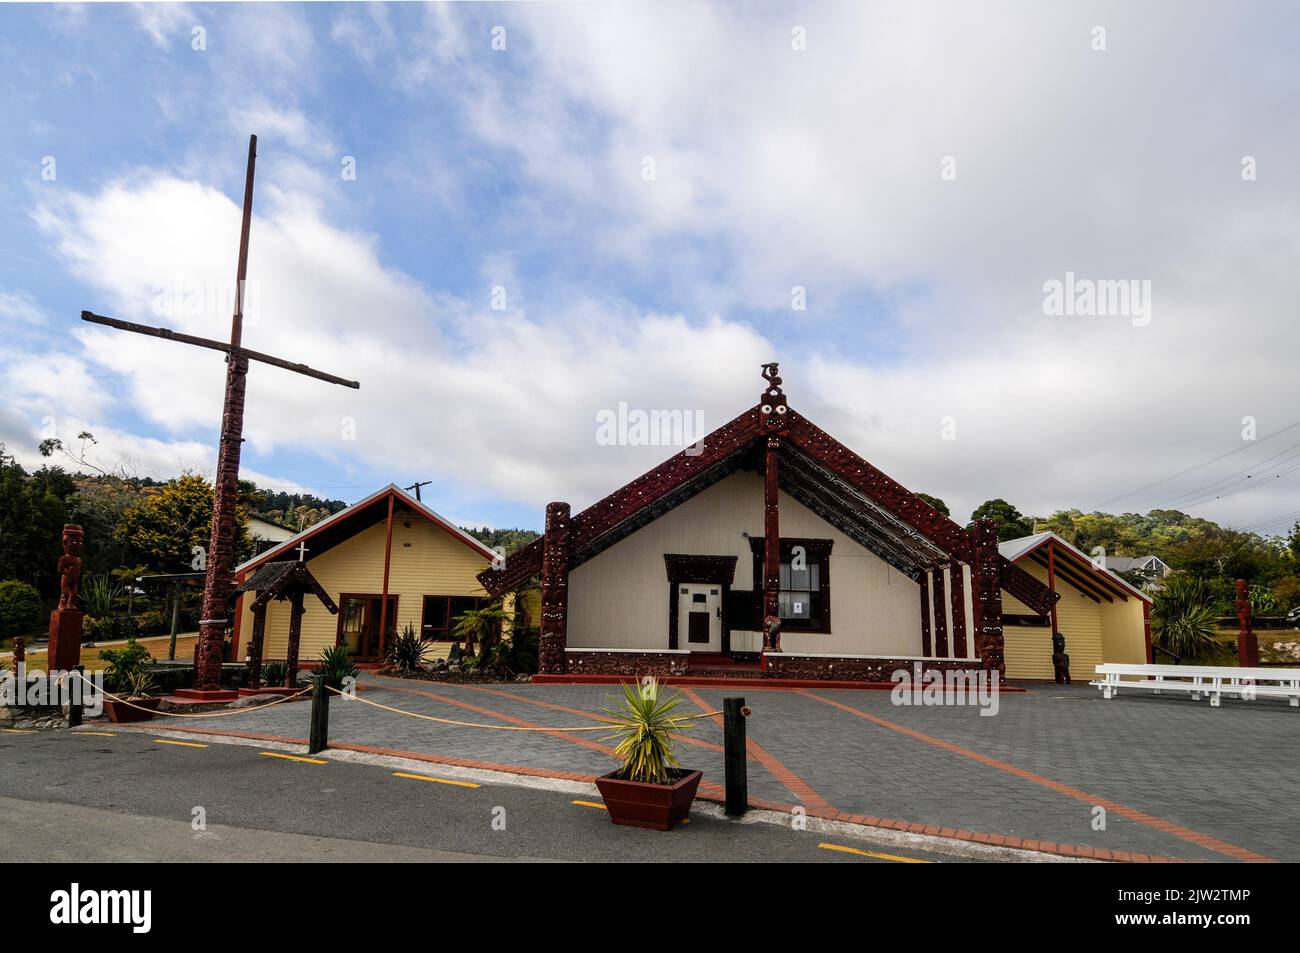 Le Wahiao (Meeting House), situé dans le seul village maori vivant de Nouvelle-Zélande, est situé dans la géothermie Whakarewarewa dans la baie de Plenty reg Banque D'Images